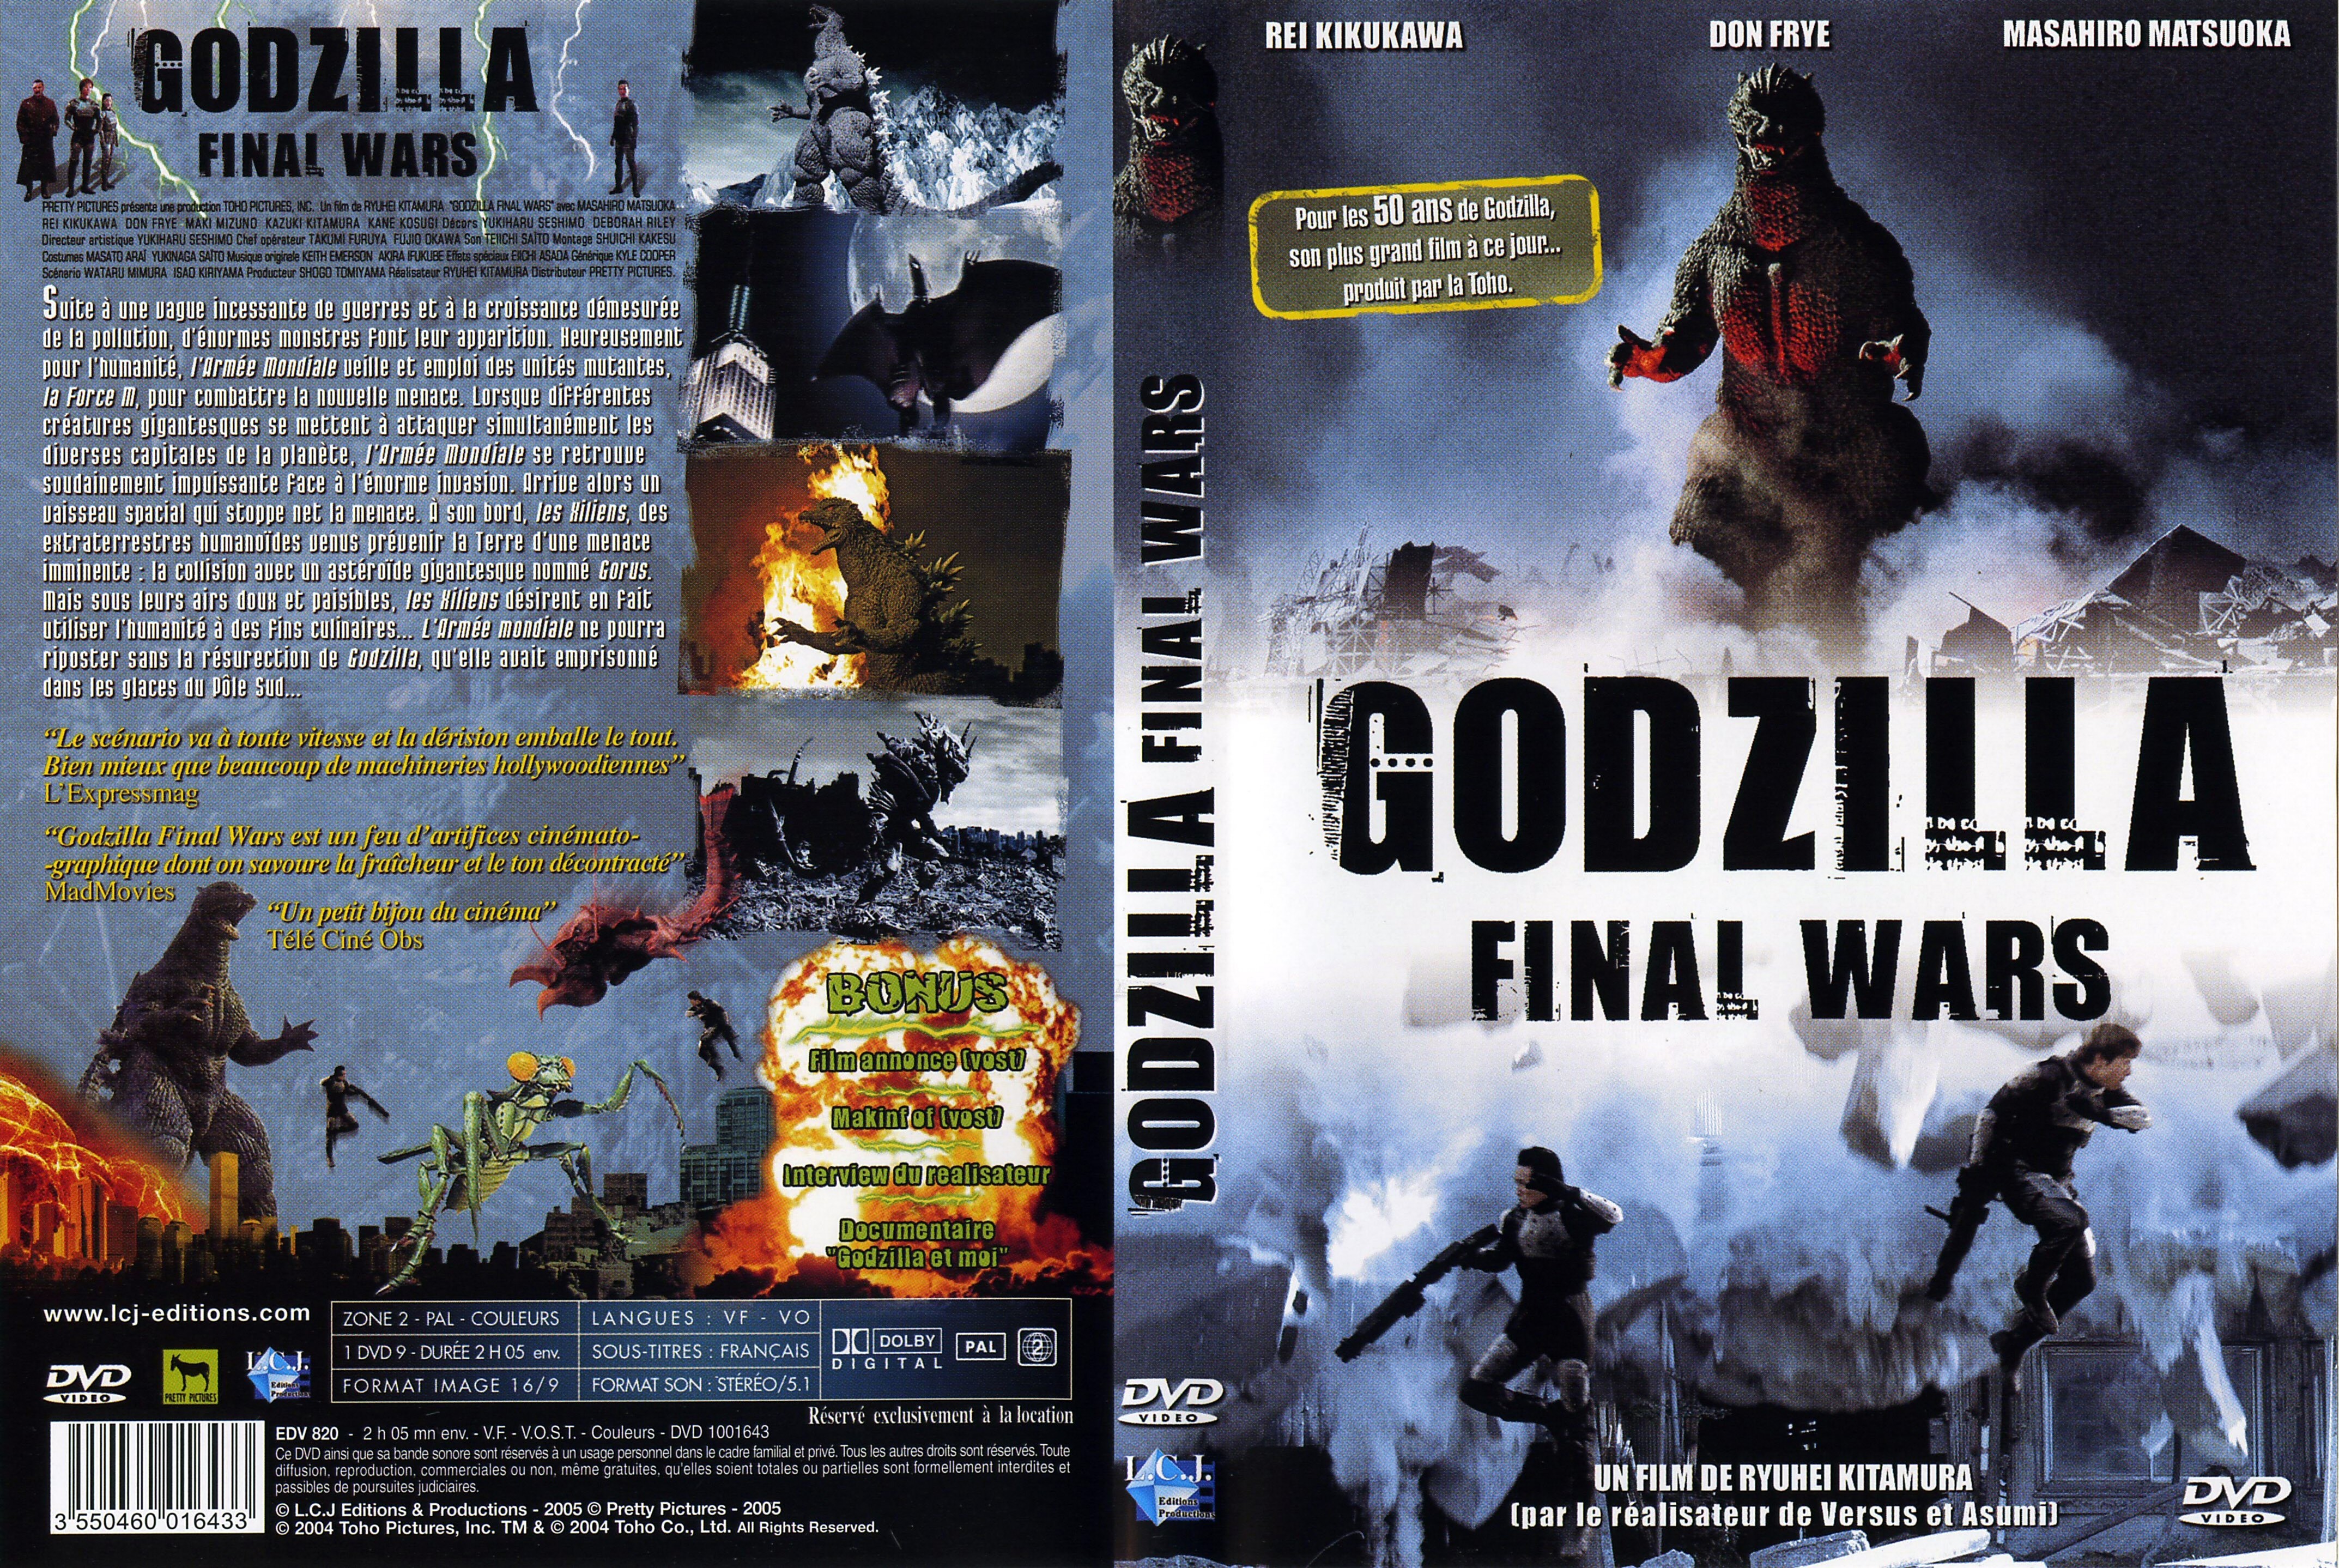 Jaquette DVD Godzilla final wars